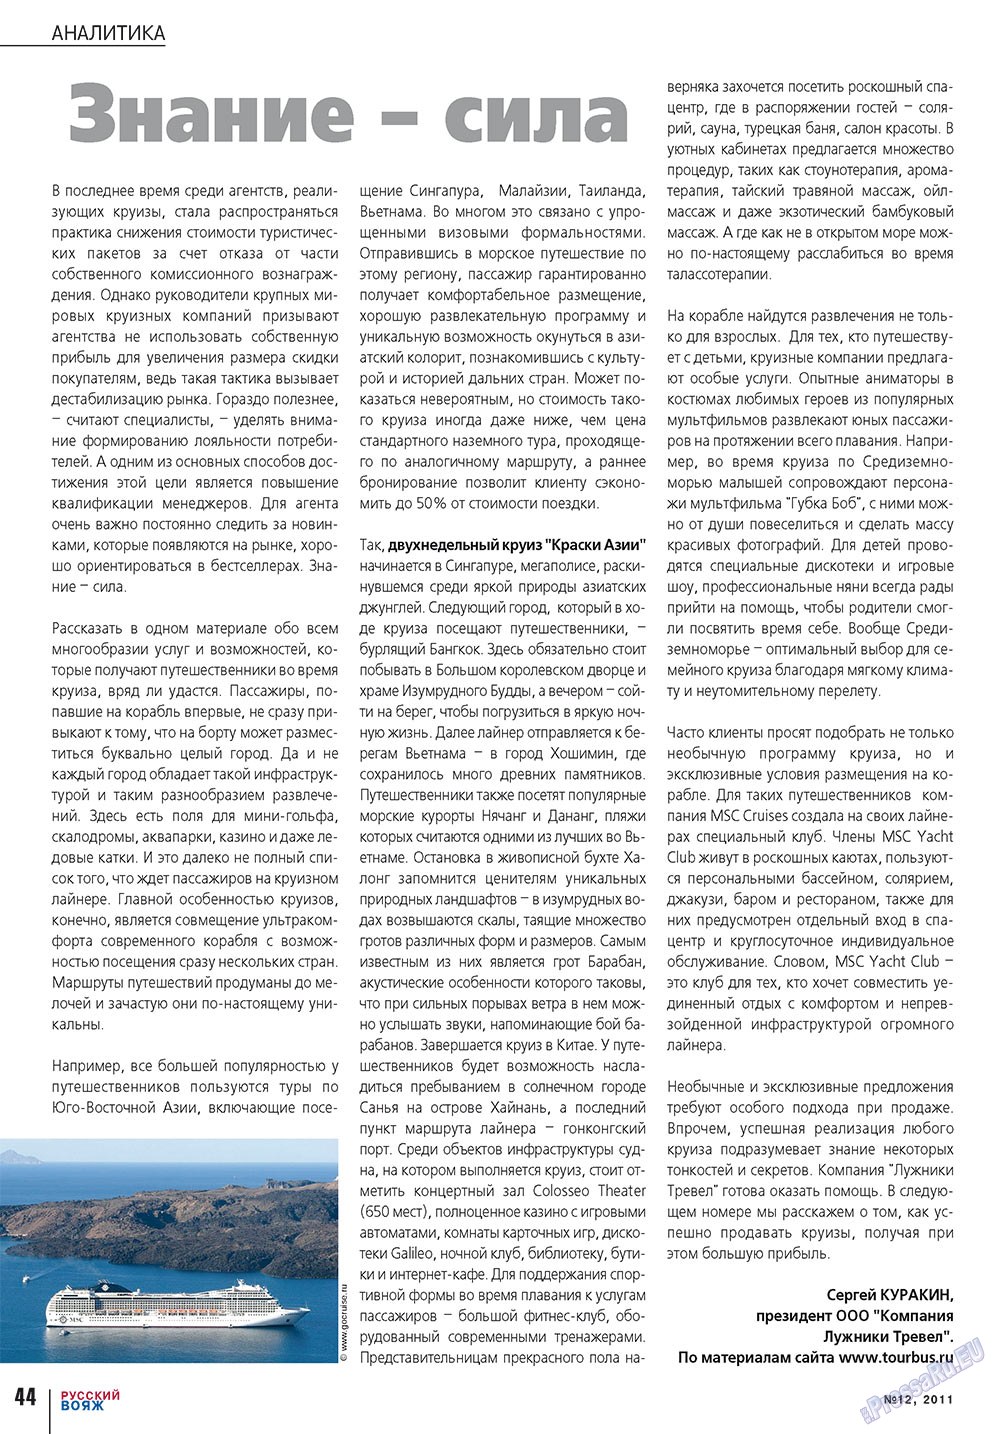 Русский вояж (журнал). 2011 год, номер 12, стр. 44